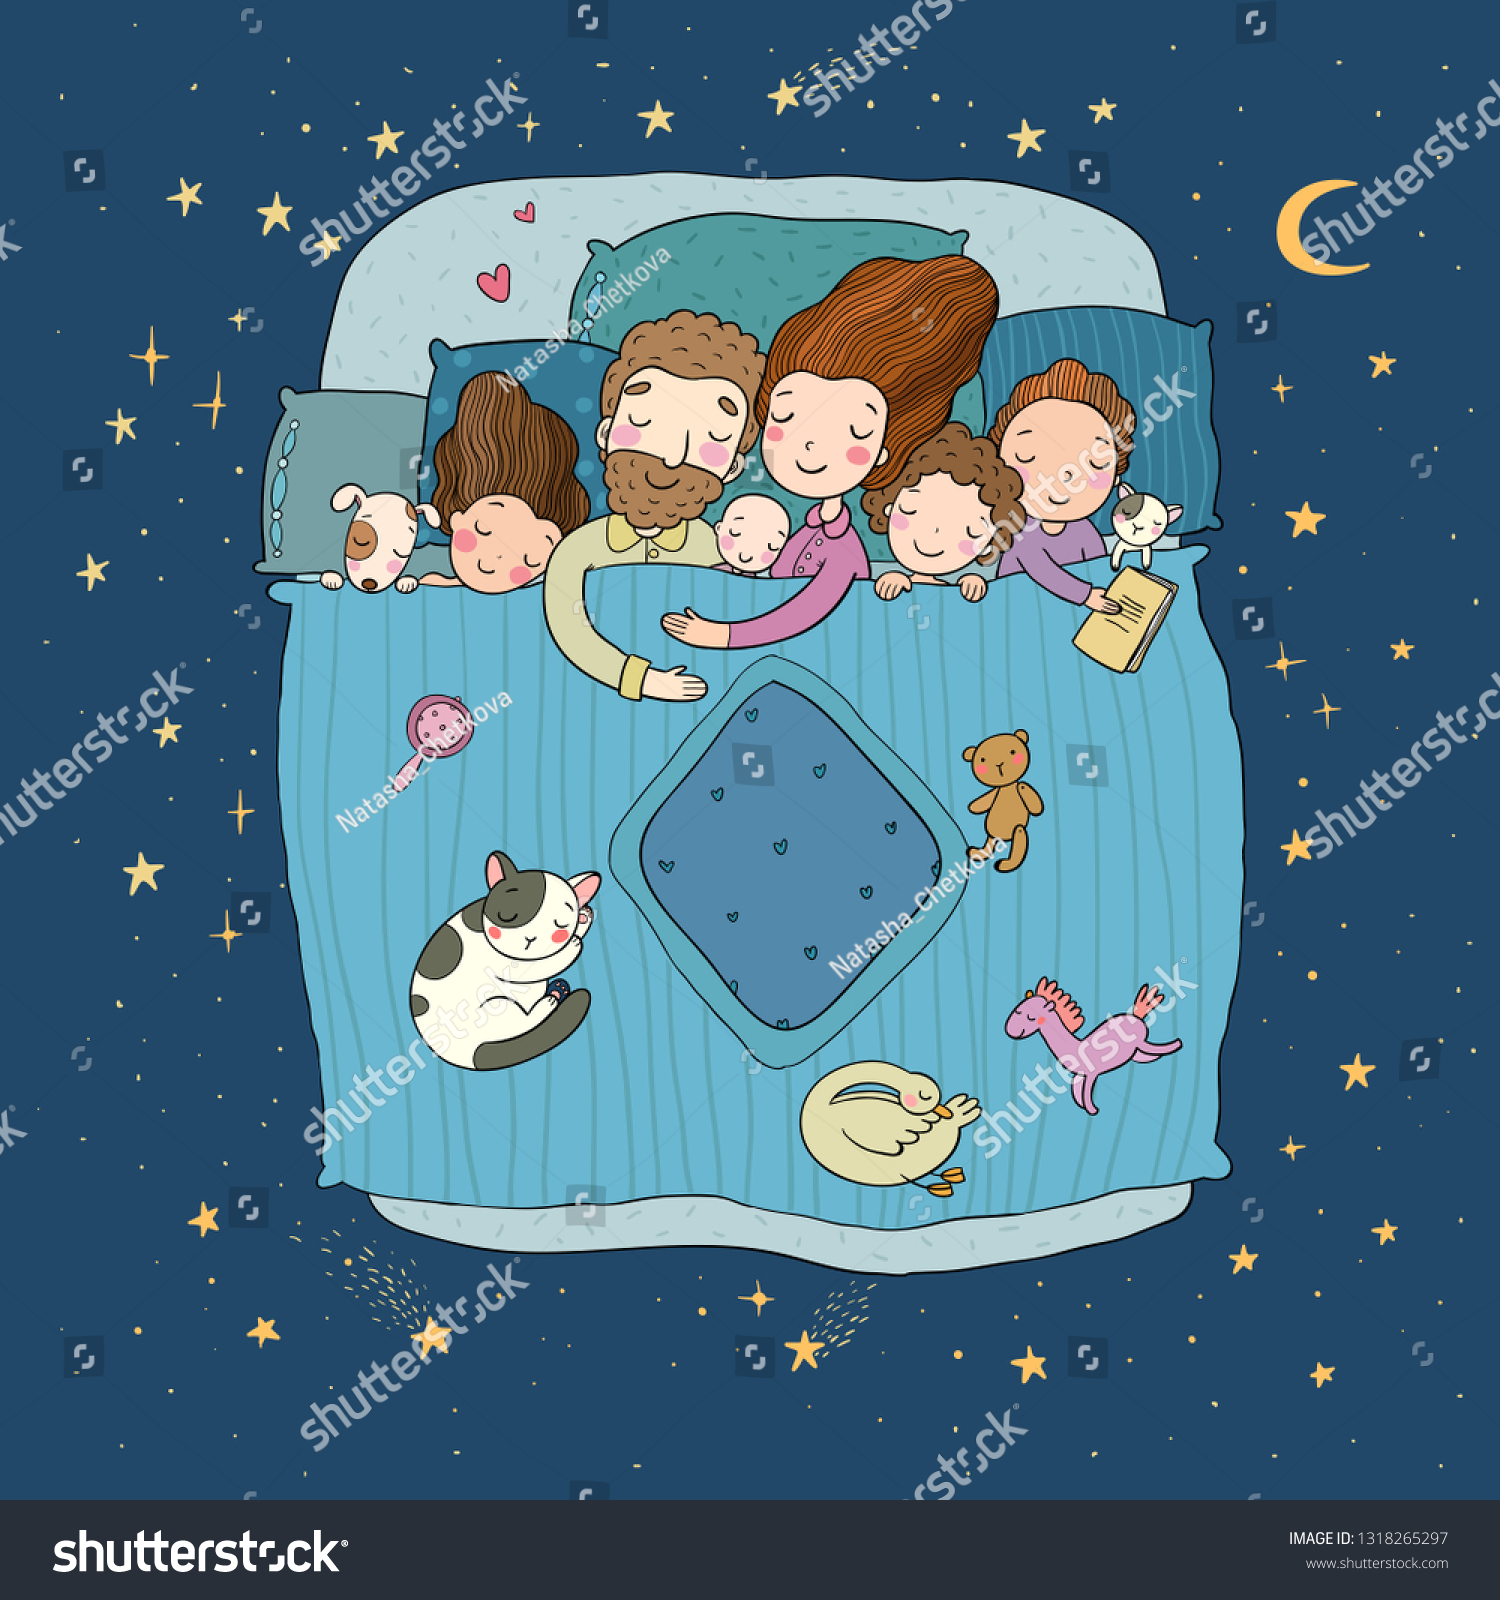 Family Sleep Bed Cartoon Mom Dad: vetor stock (livre de direitos